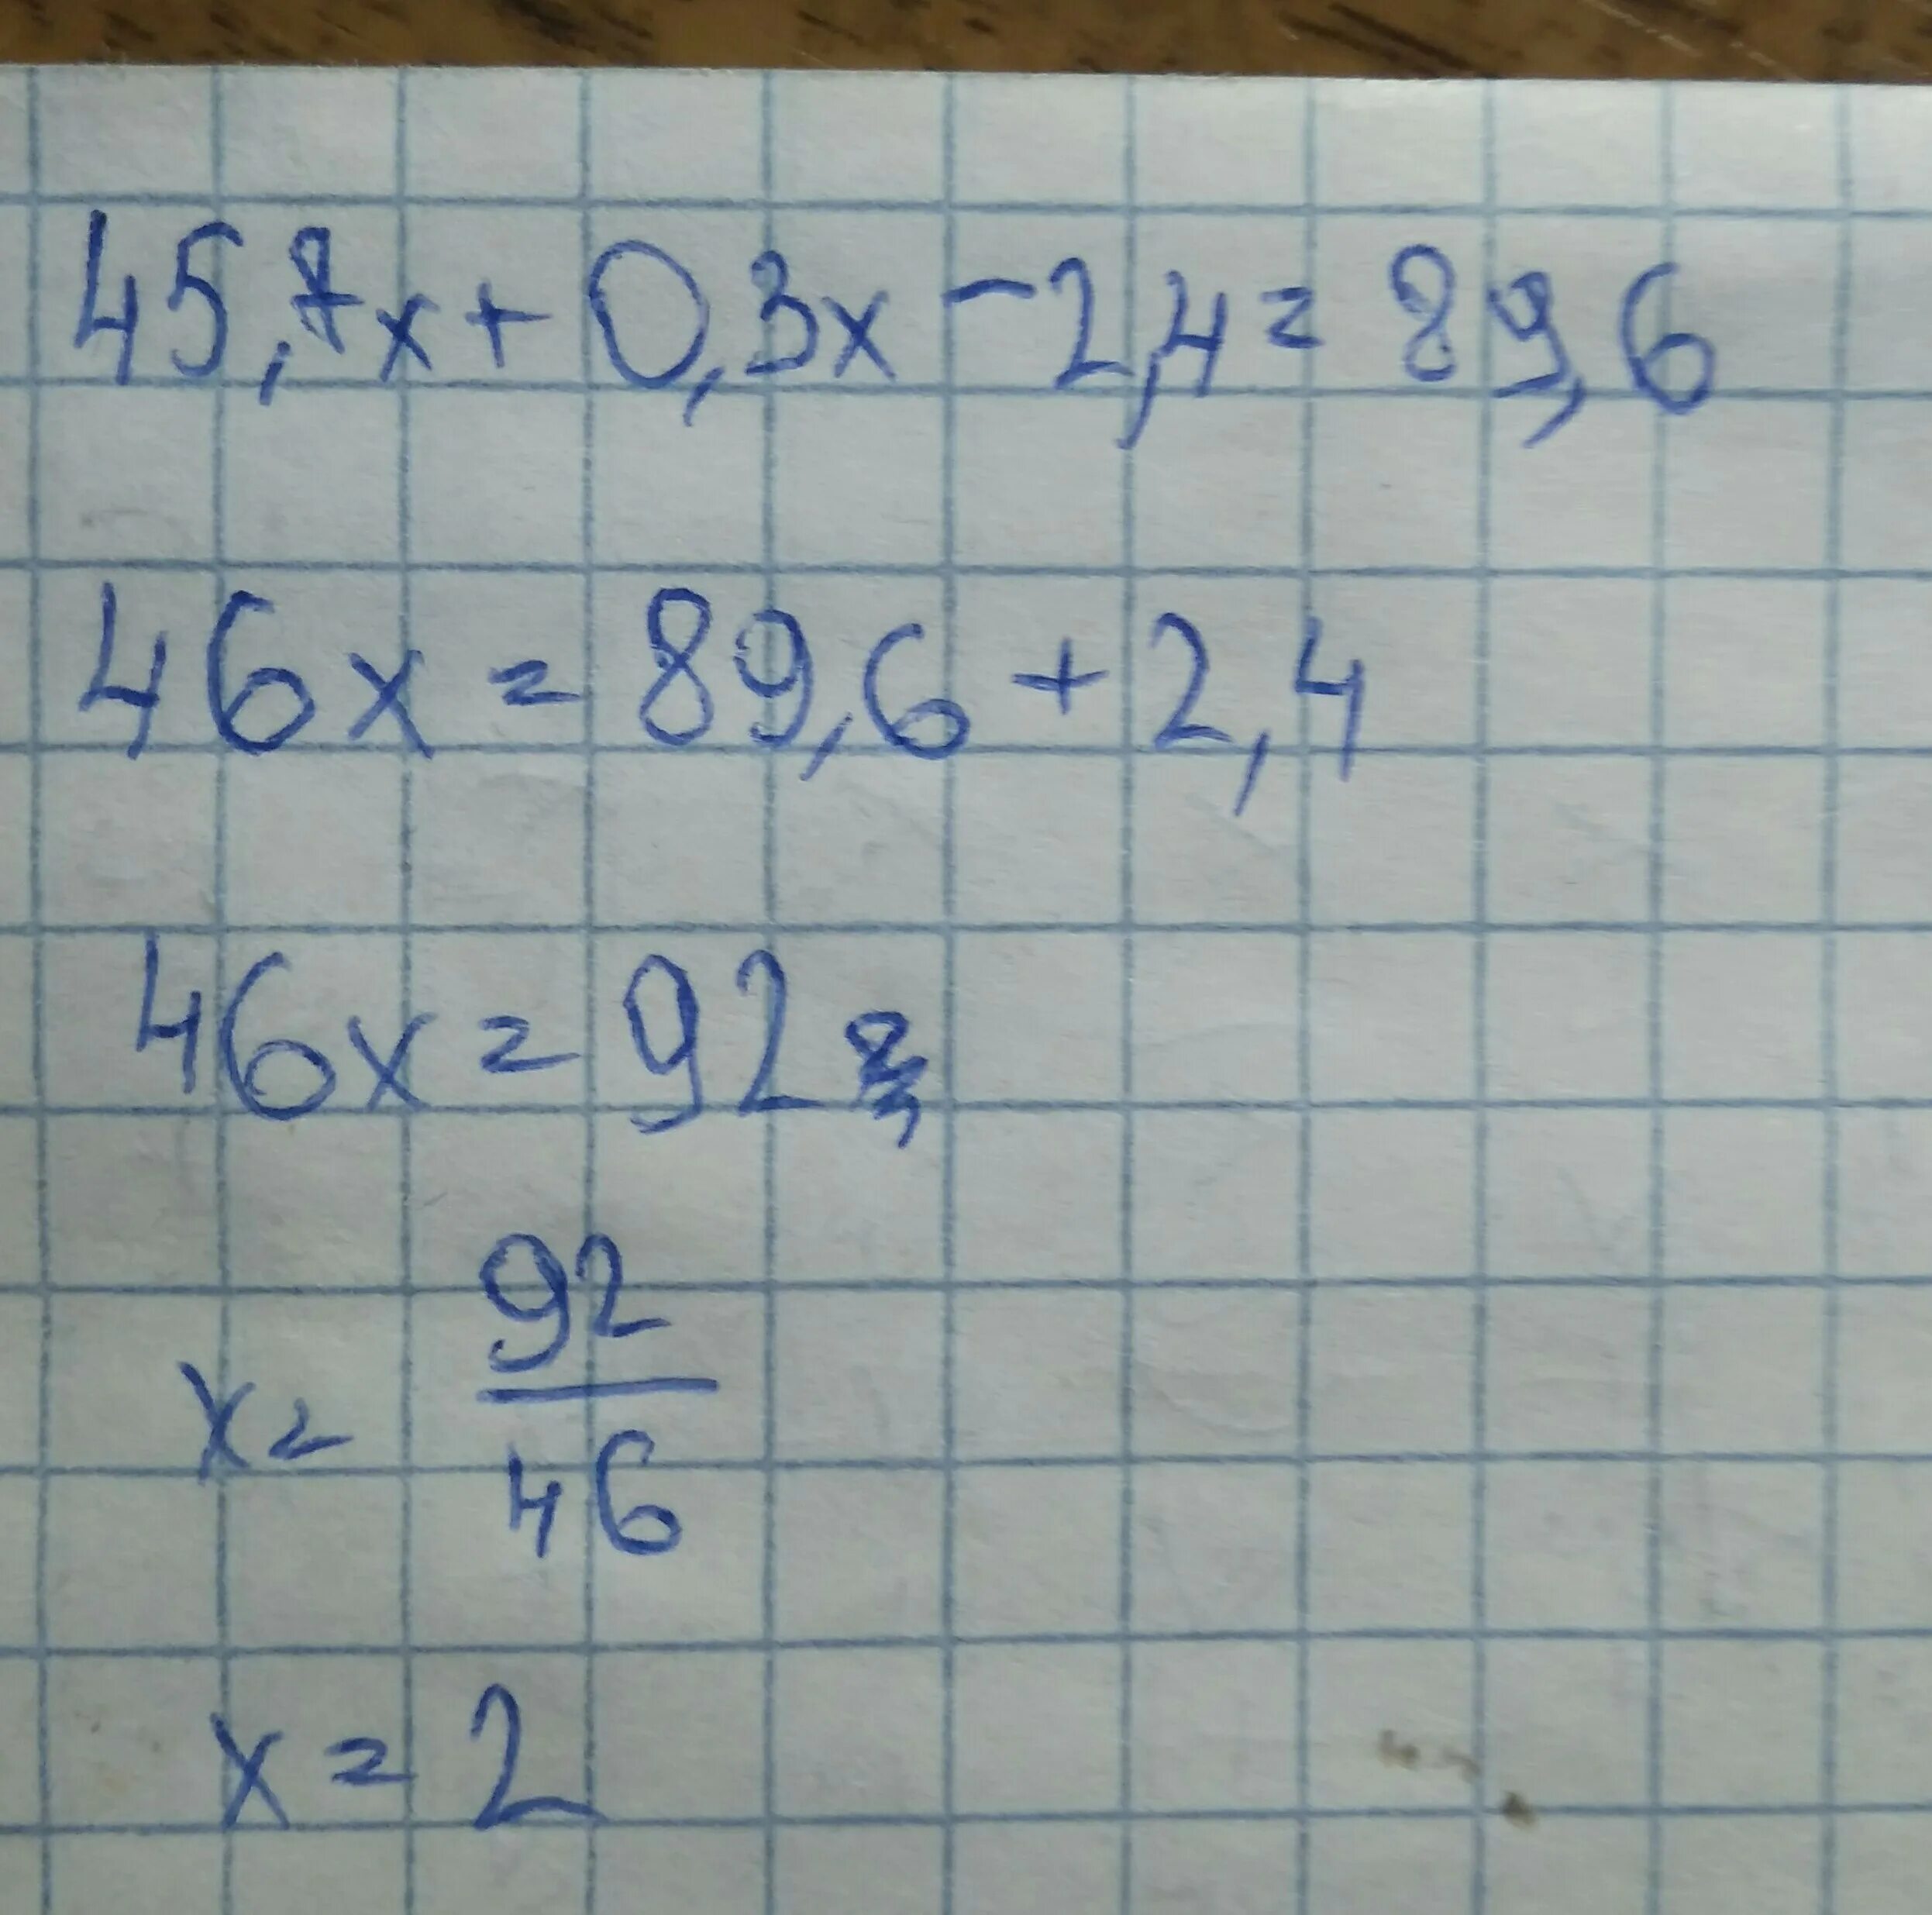 45.7Х+0.3Х-2.4 89.6 решение. Решите уравнение 45.7х+0.3х-2.4 89.6. 45 7х+0.3-2.4 89.6. 45 7х 0 3х-2 4 89 6. Х 2 7x 0